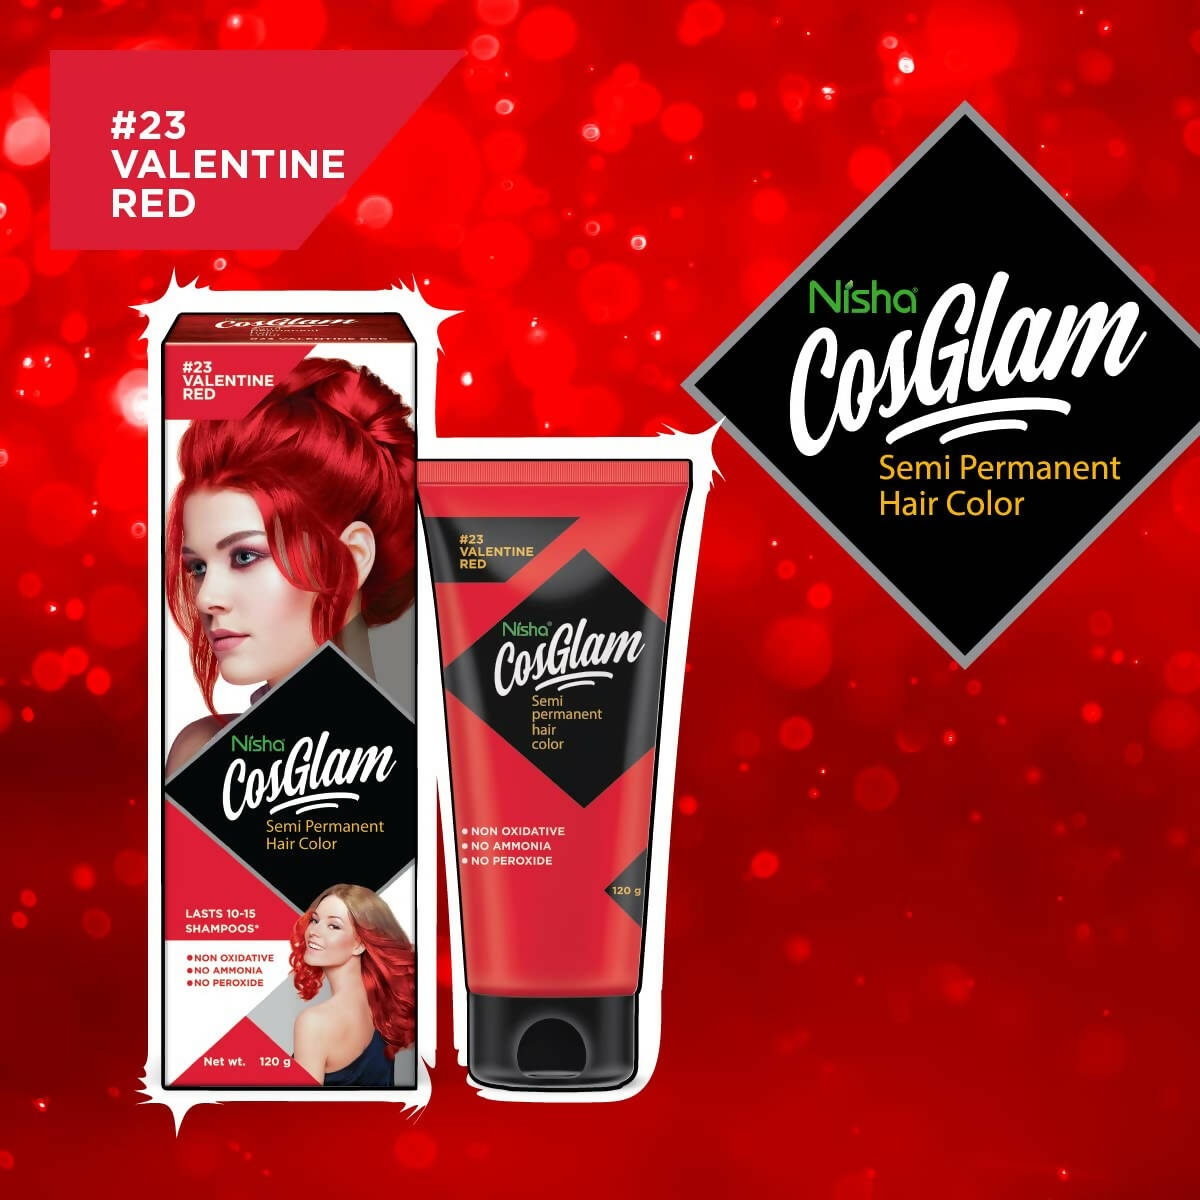 Nisha Cosglam Semi Permanent Hair Color 23 Valentine Red